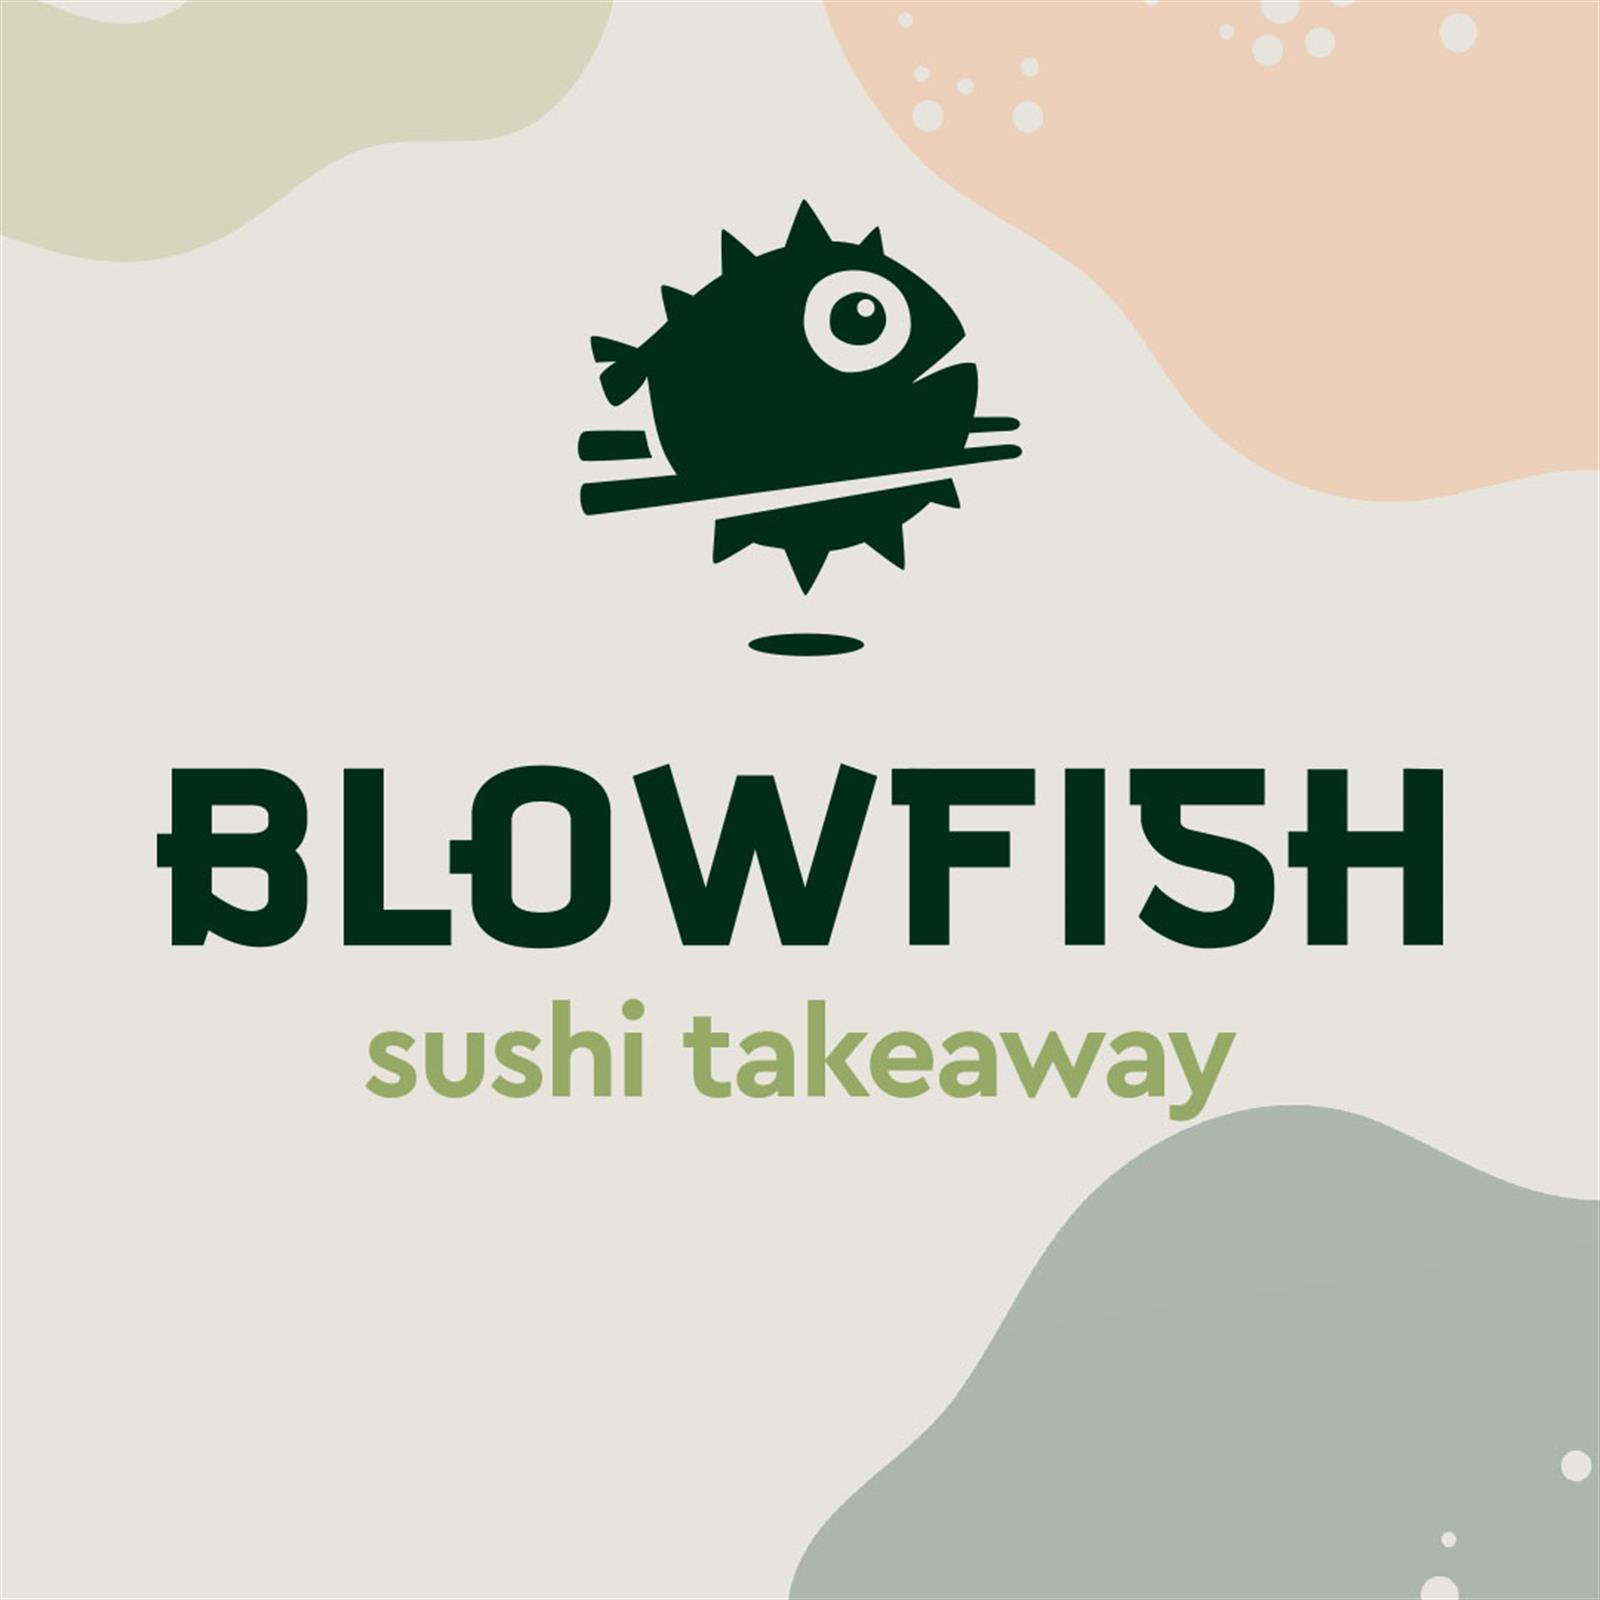 Blowfish sushi